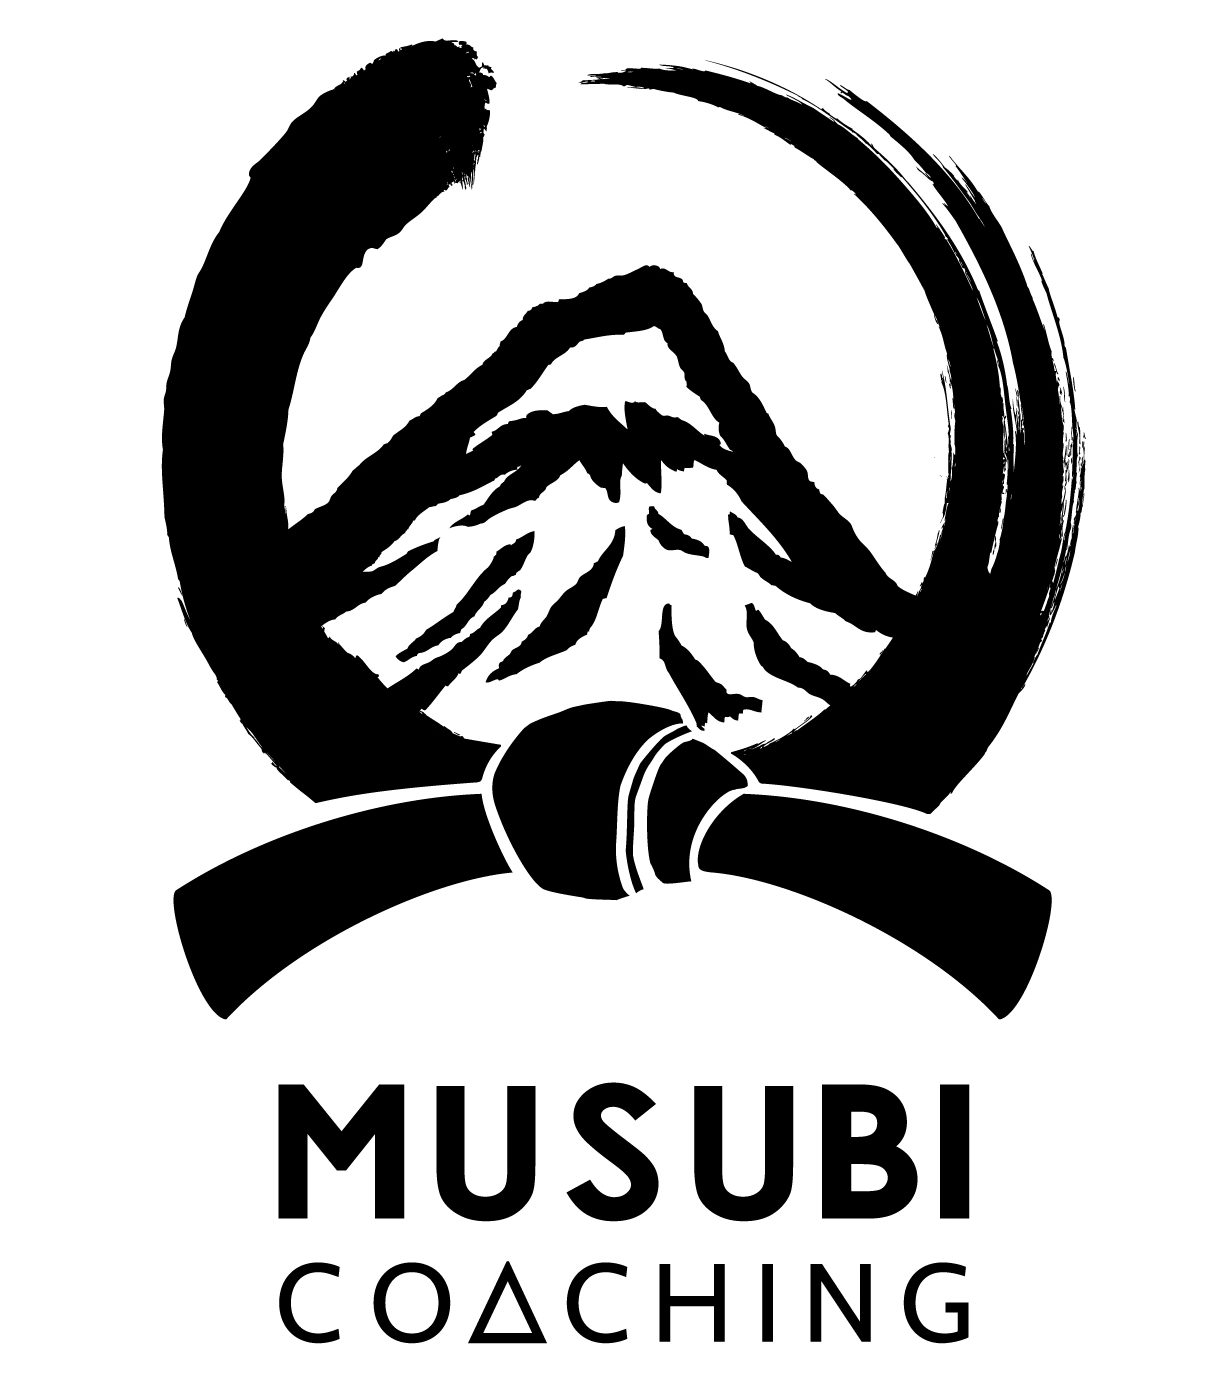 – Musubi Coaching – 